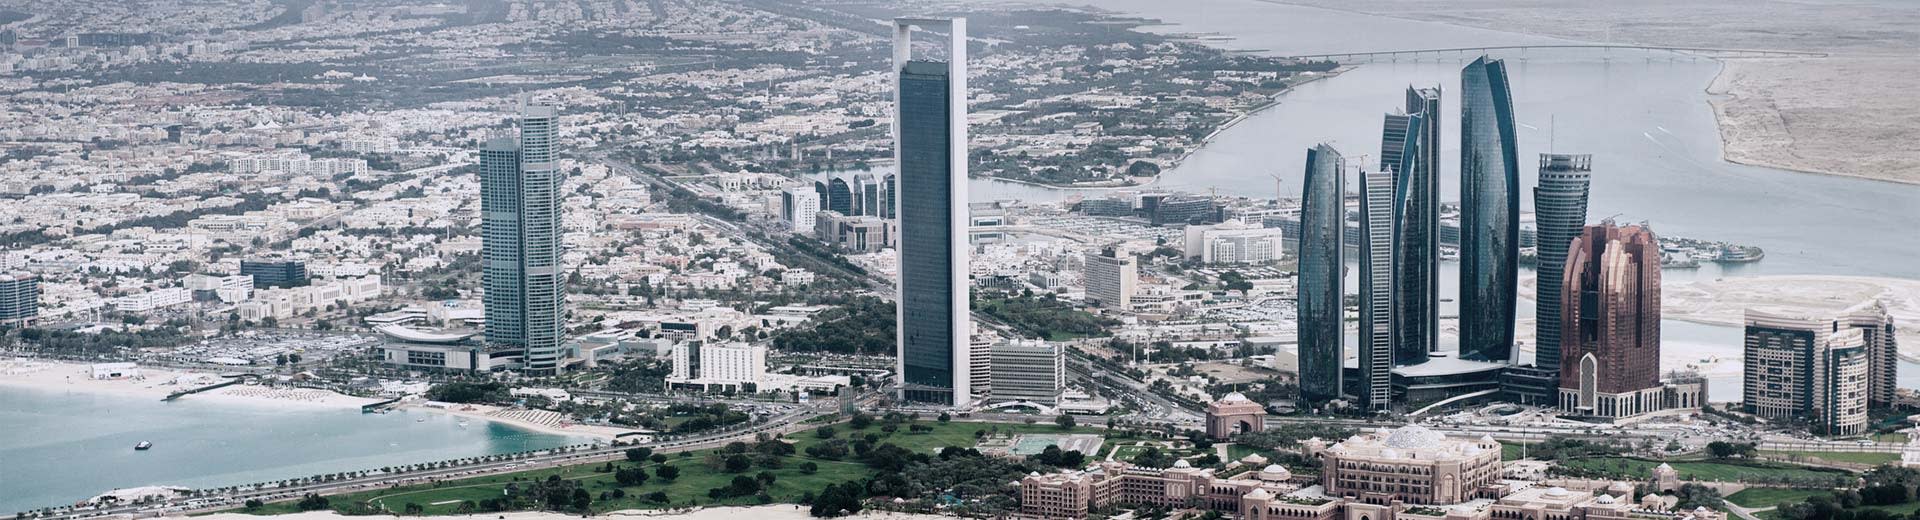 Panorama du centre-ville d'Abu Dhabi avec une vue claire des gratte-ciel et du désert en arrière-plan.